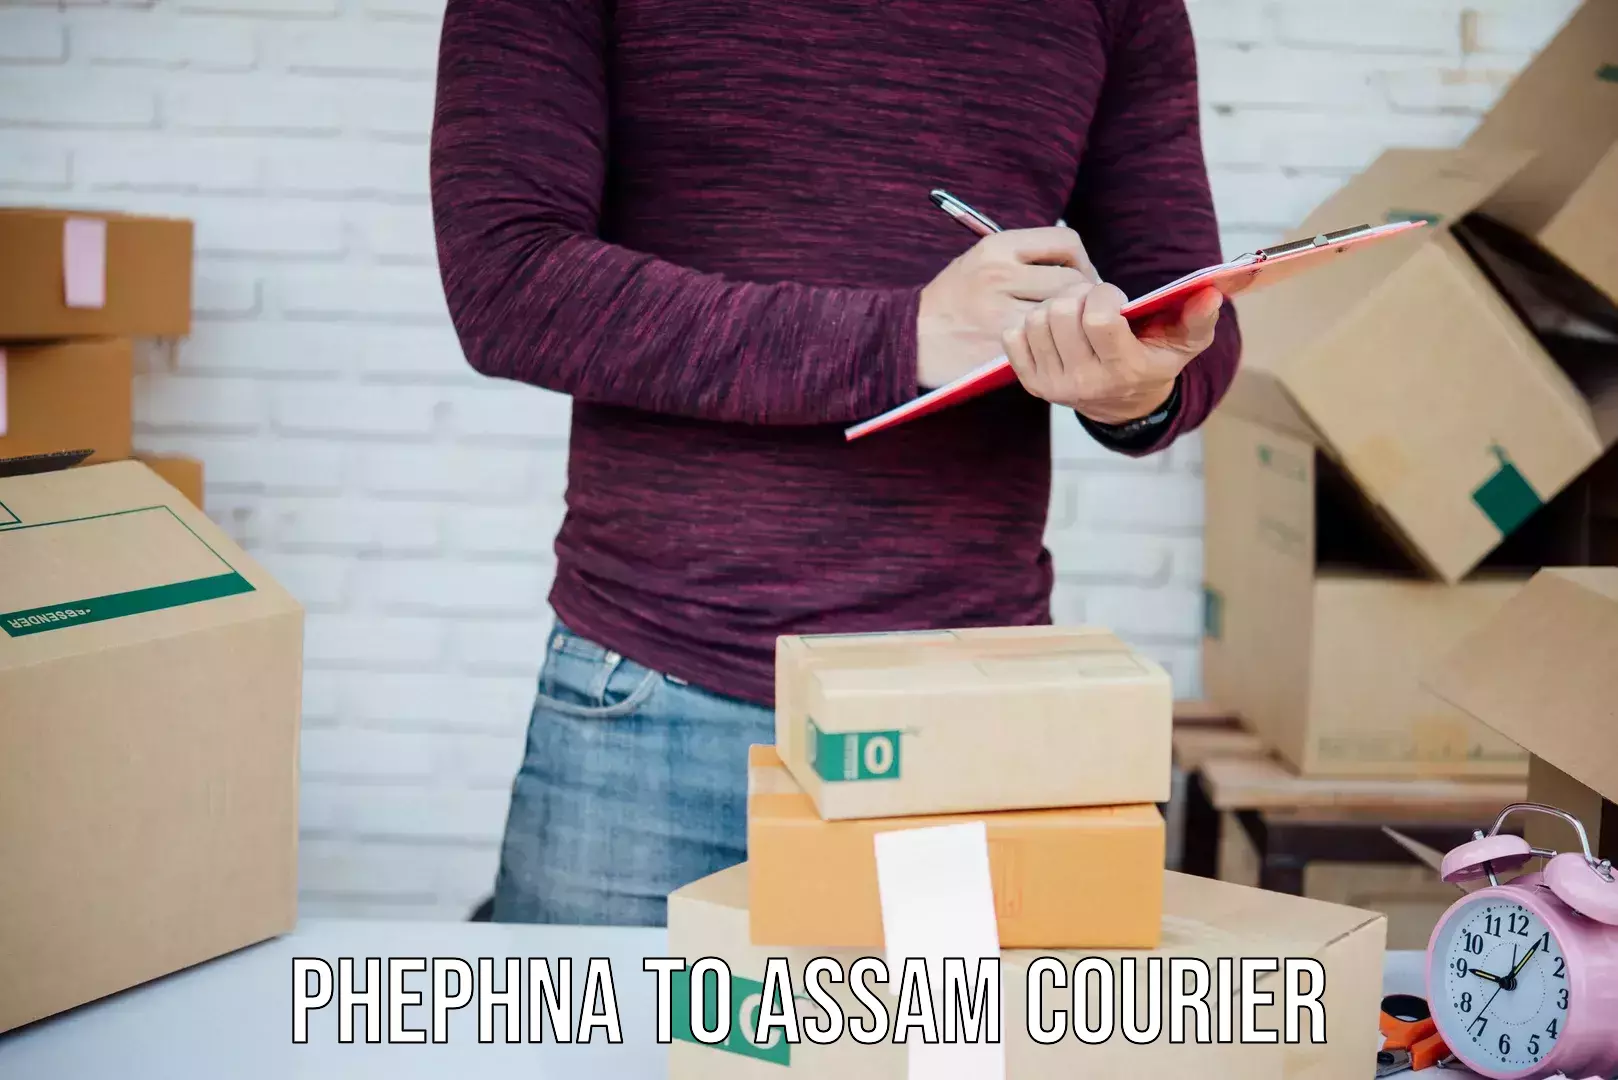 Efficient parcel service Phephna to Dotma